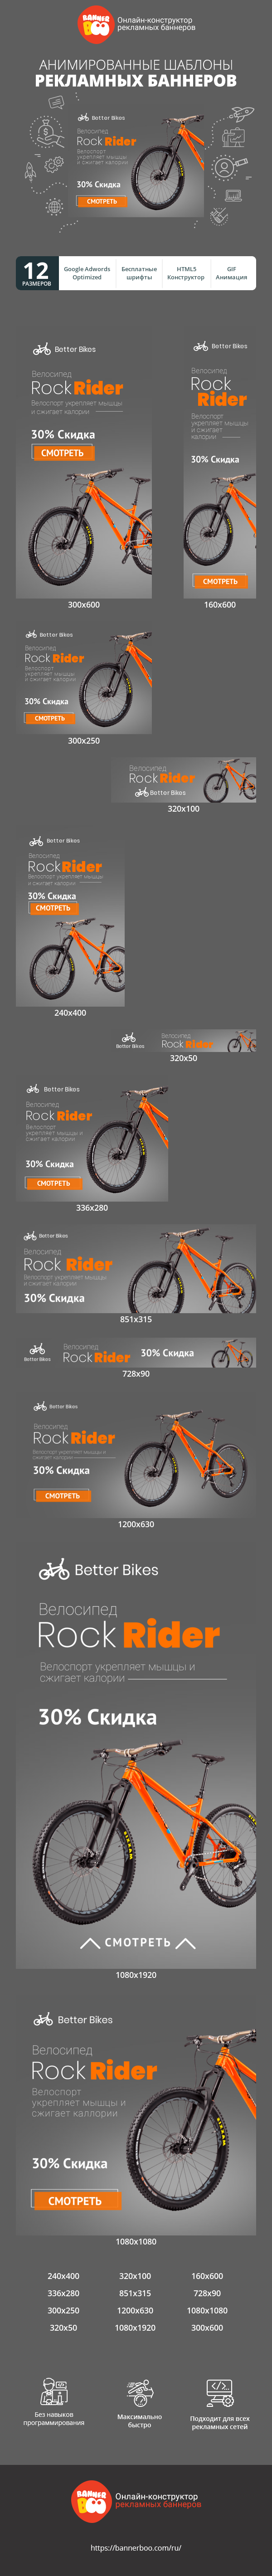 Шаблон рекламного баннера — Велосипед Rock Rider — Велоспорт укрепляет мышцы и сжигает калории